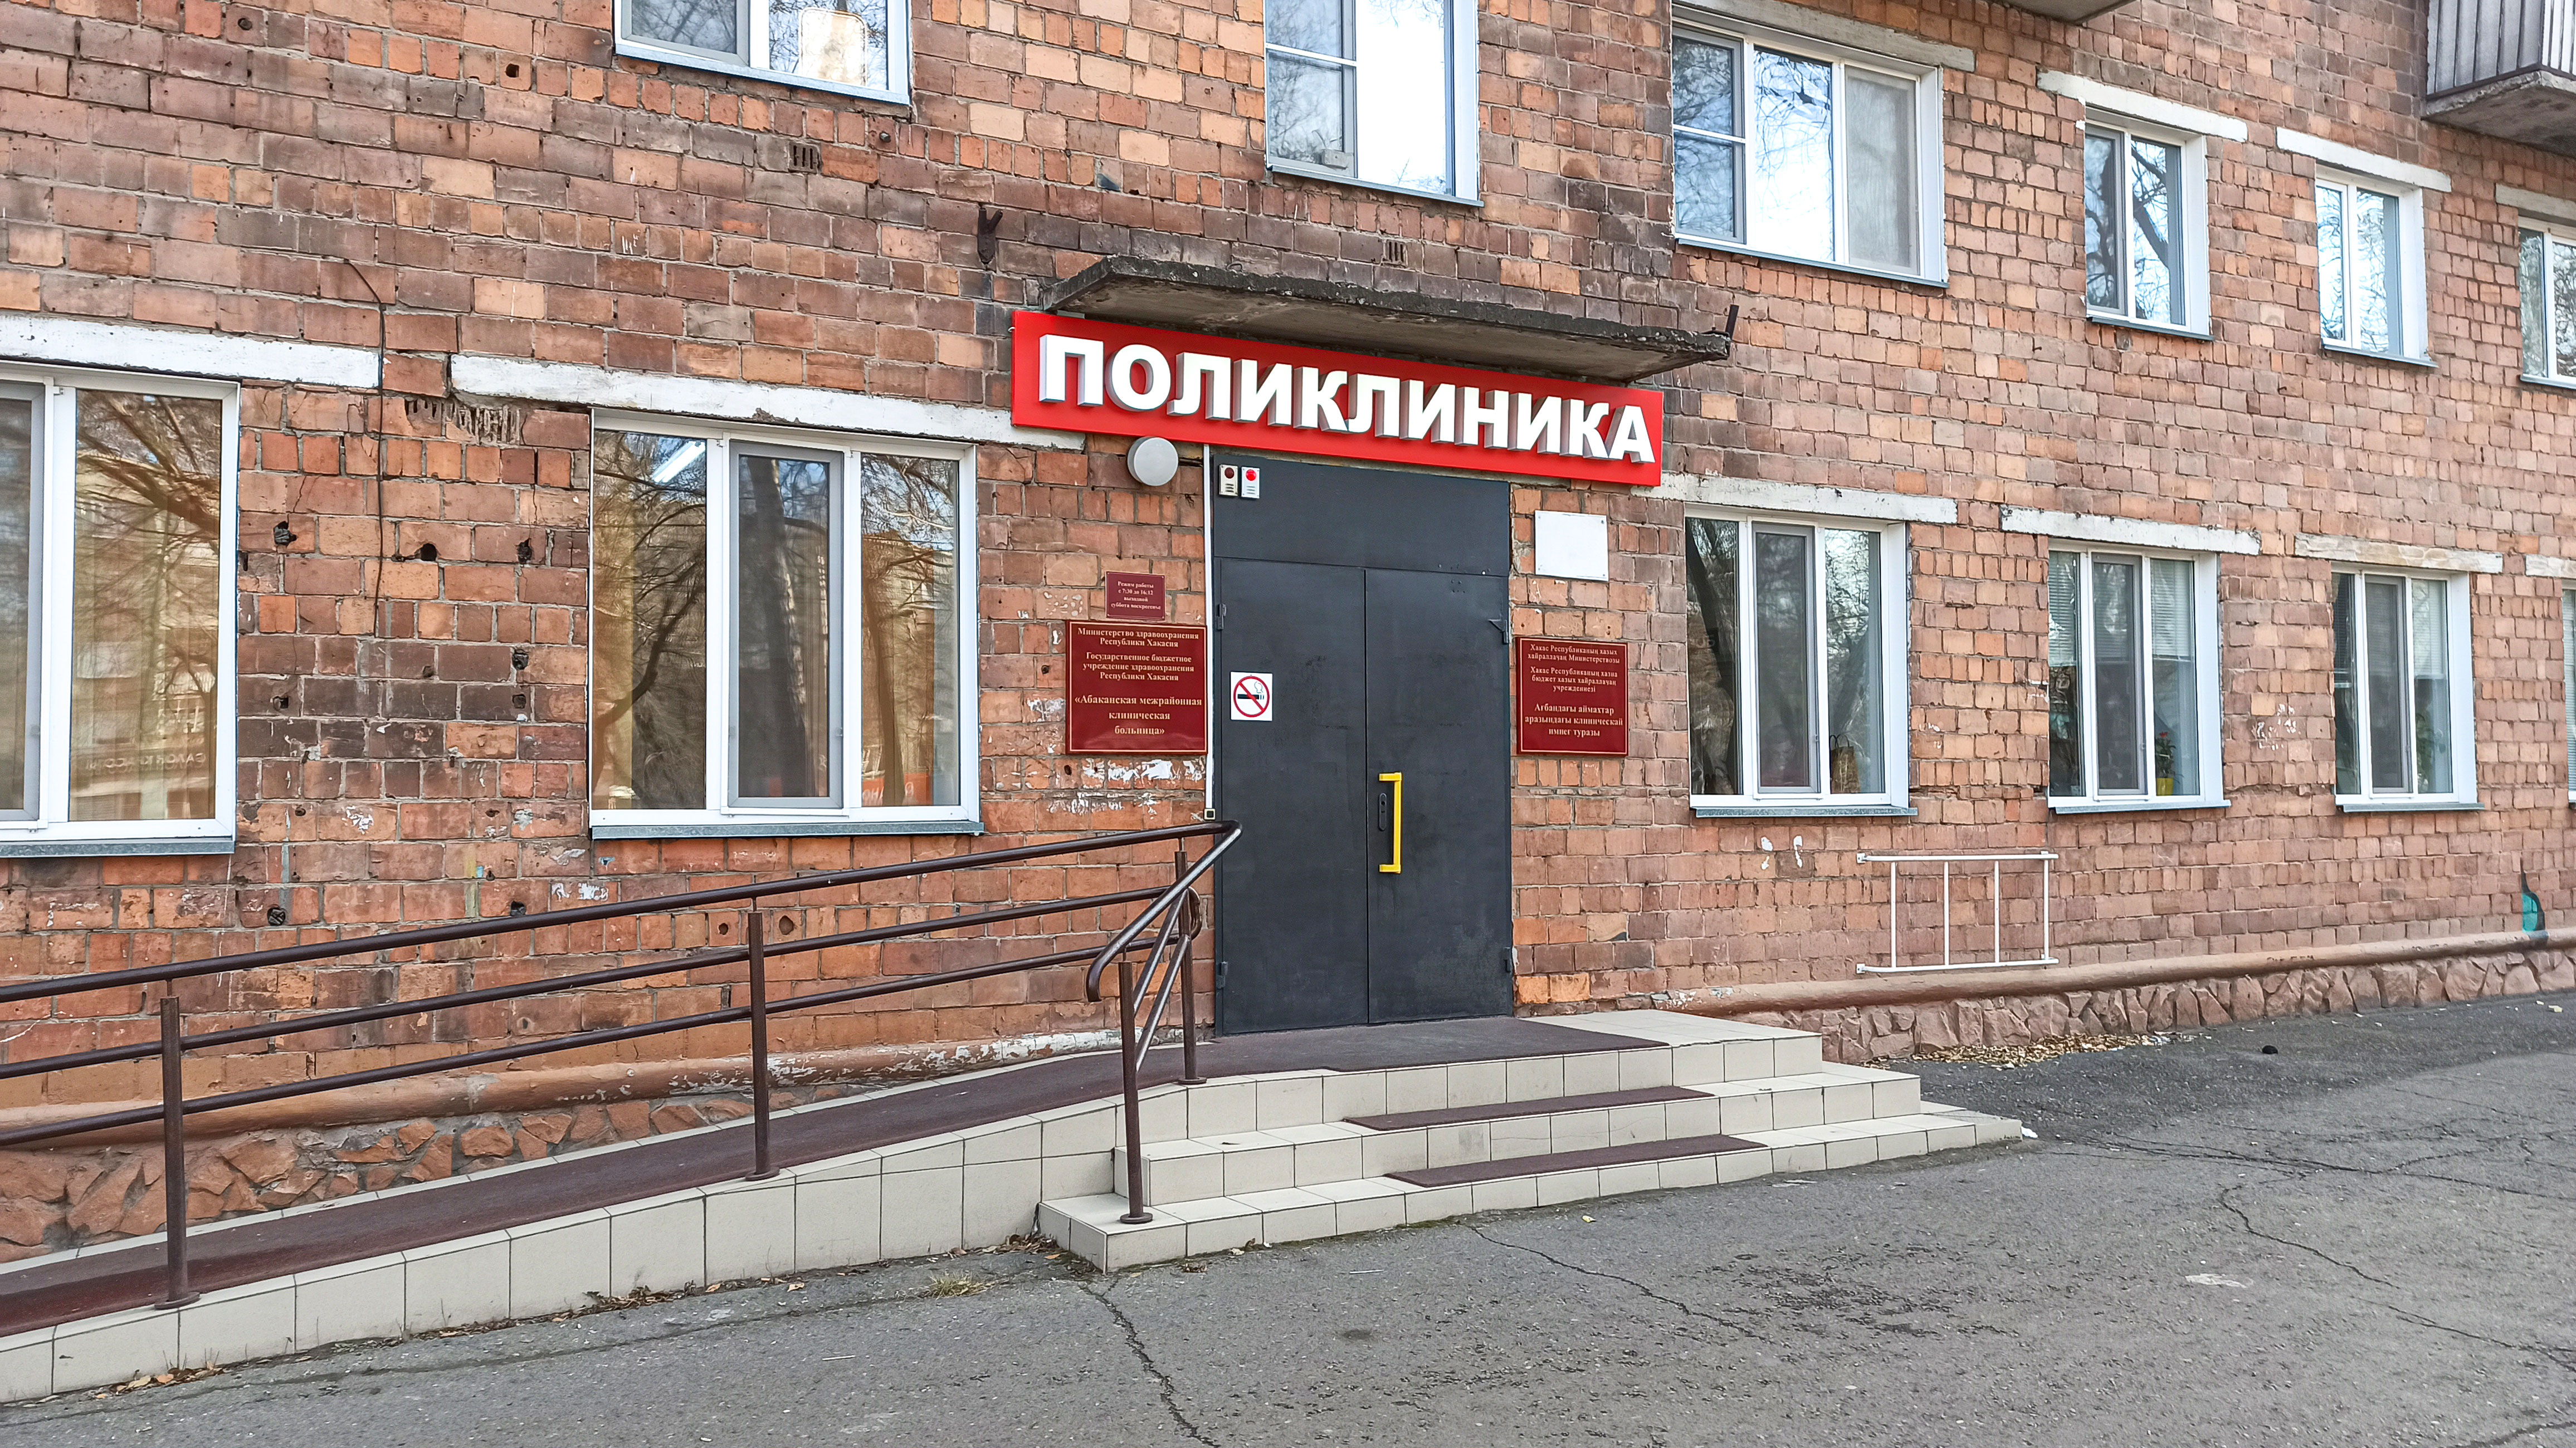 Студенческая поликлиника на Щетинкина в г. Абакан.